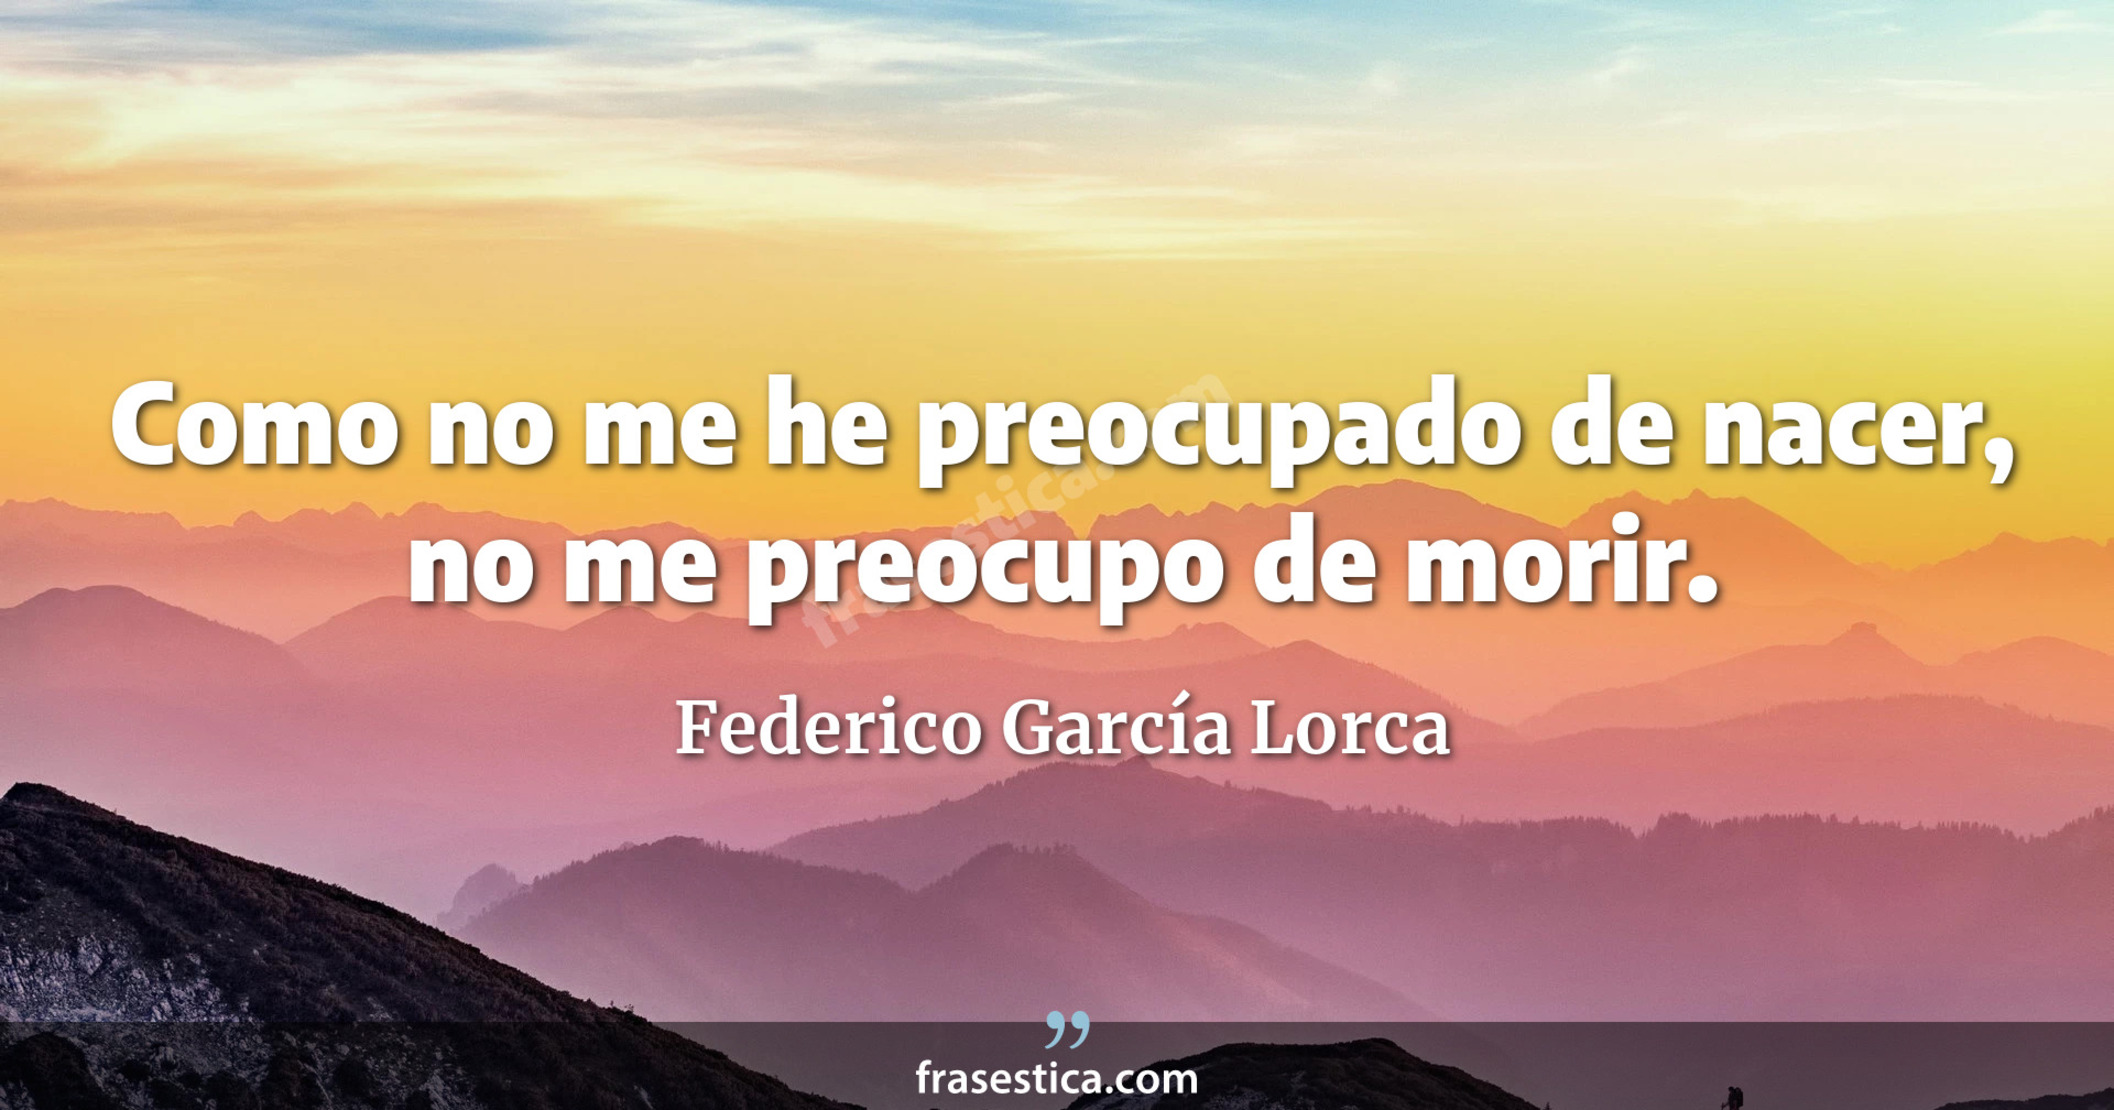 Como no me he preocupado de nacer, no me preocupo de morir. - Federico García Lorca